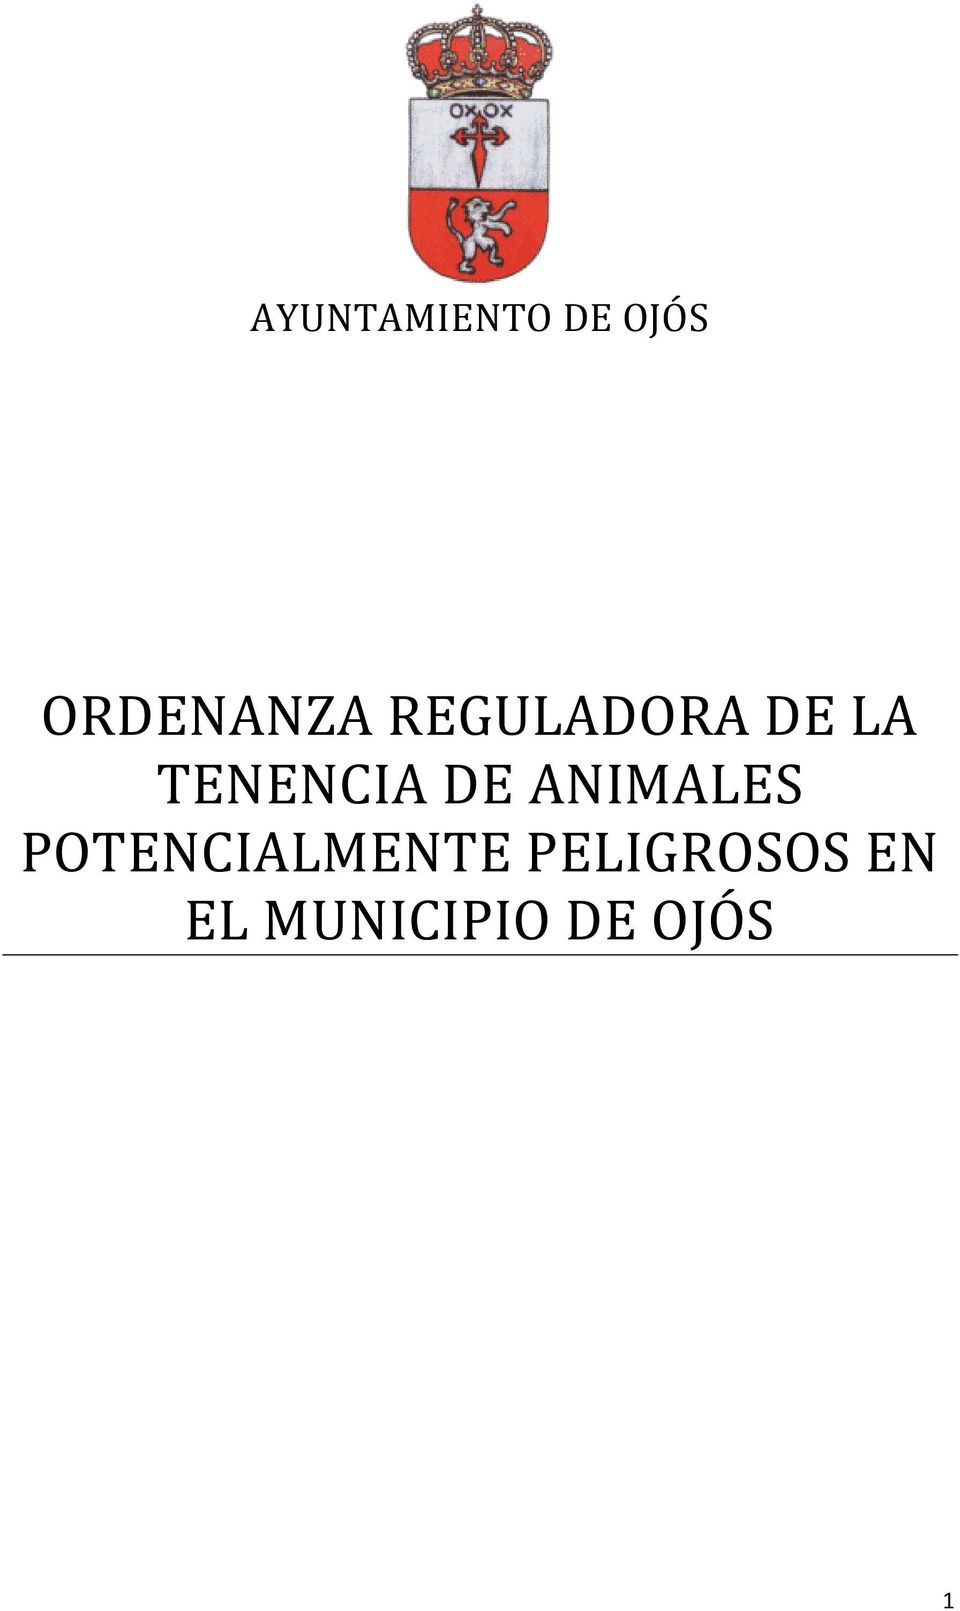 TENENCIA DE ANIMALES